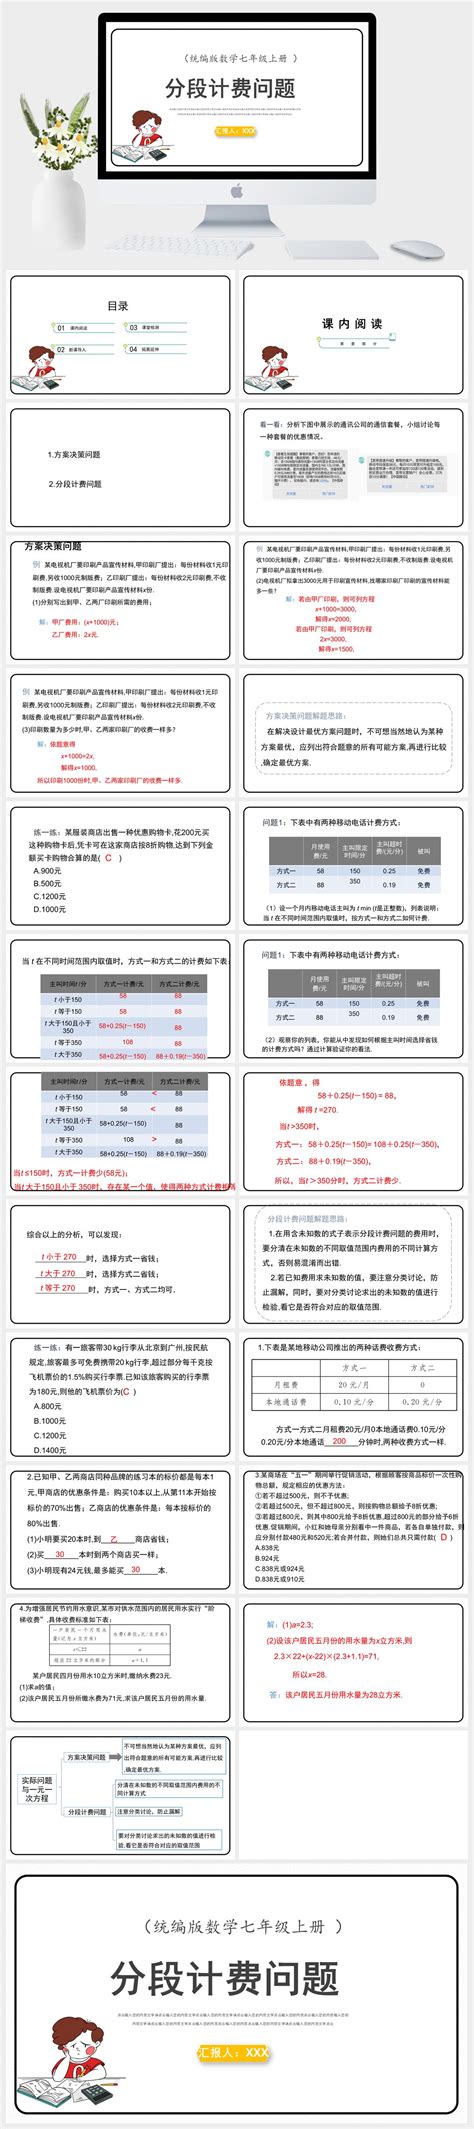 江苏：2021年普通高考逐分段统计表